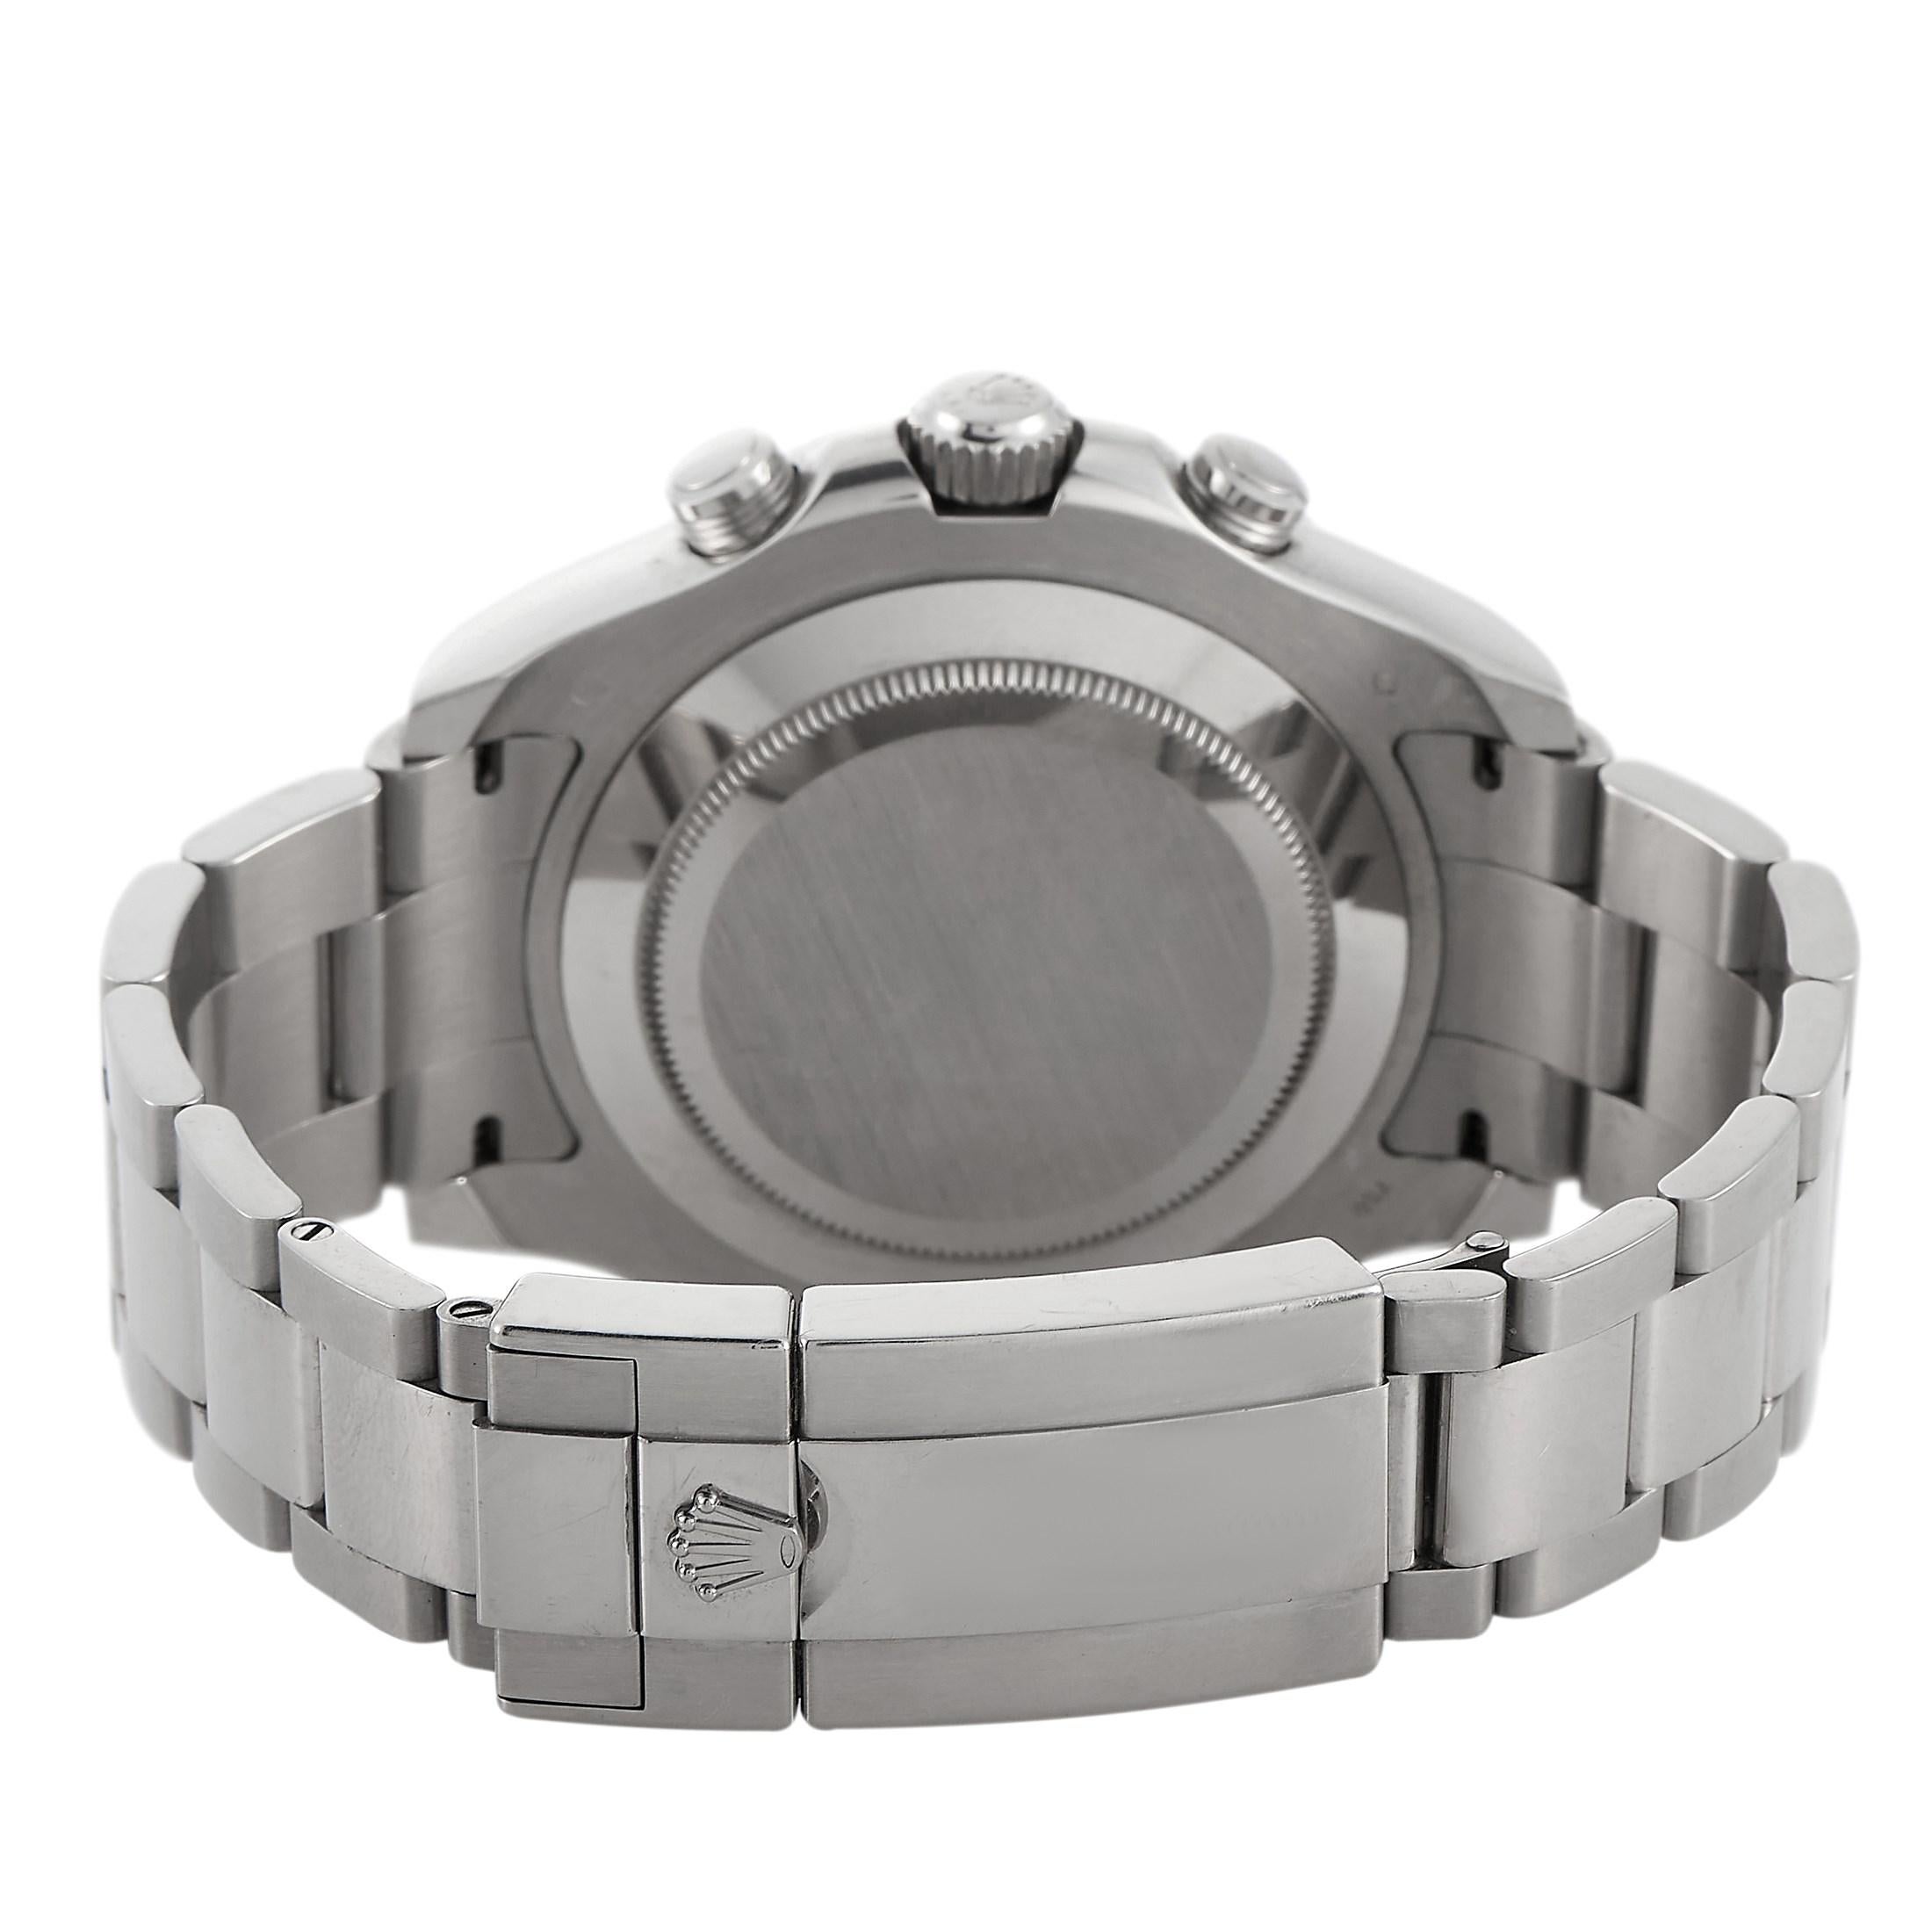 Men's Rolex Yacht-Master II 18K White Gold and Platinum Watch 116689